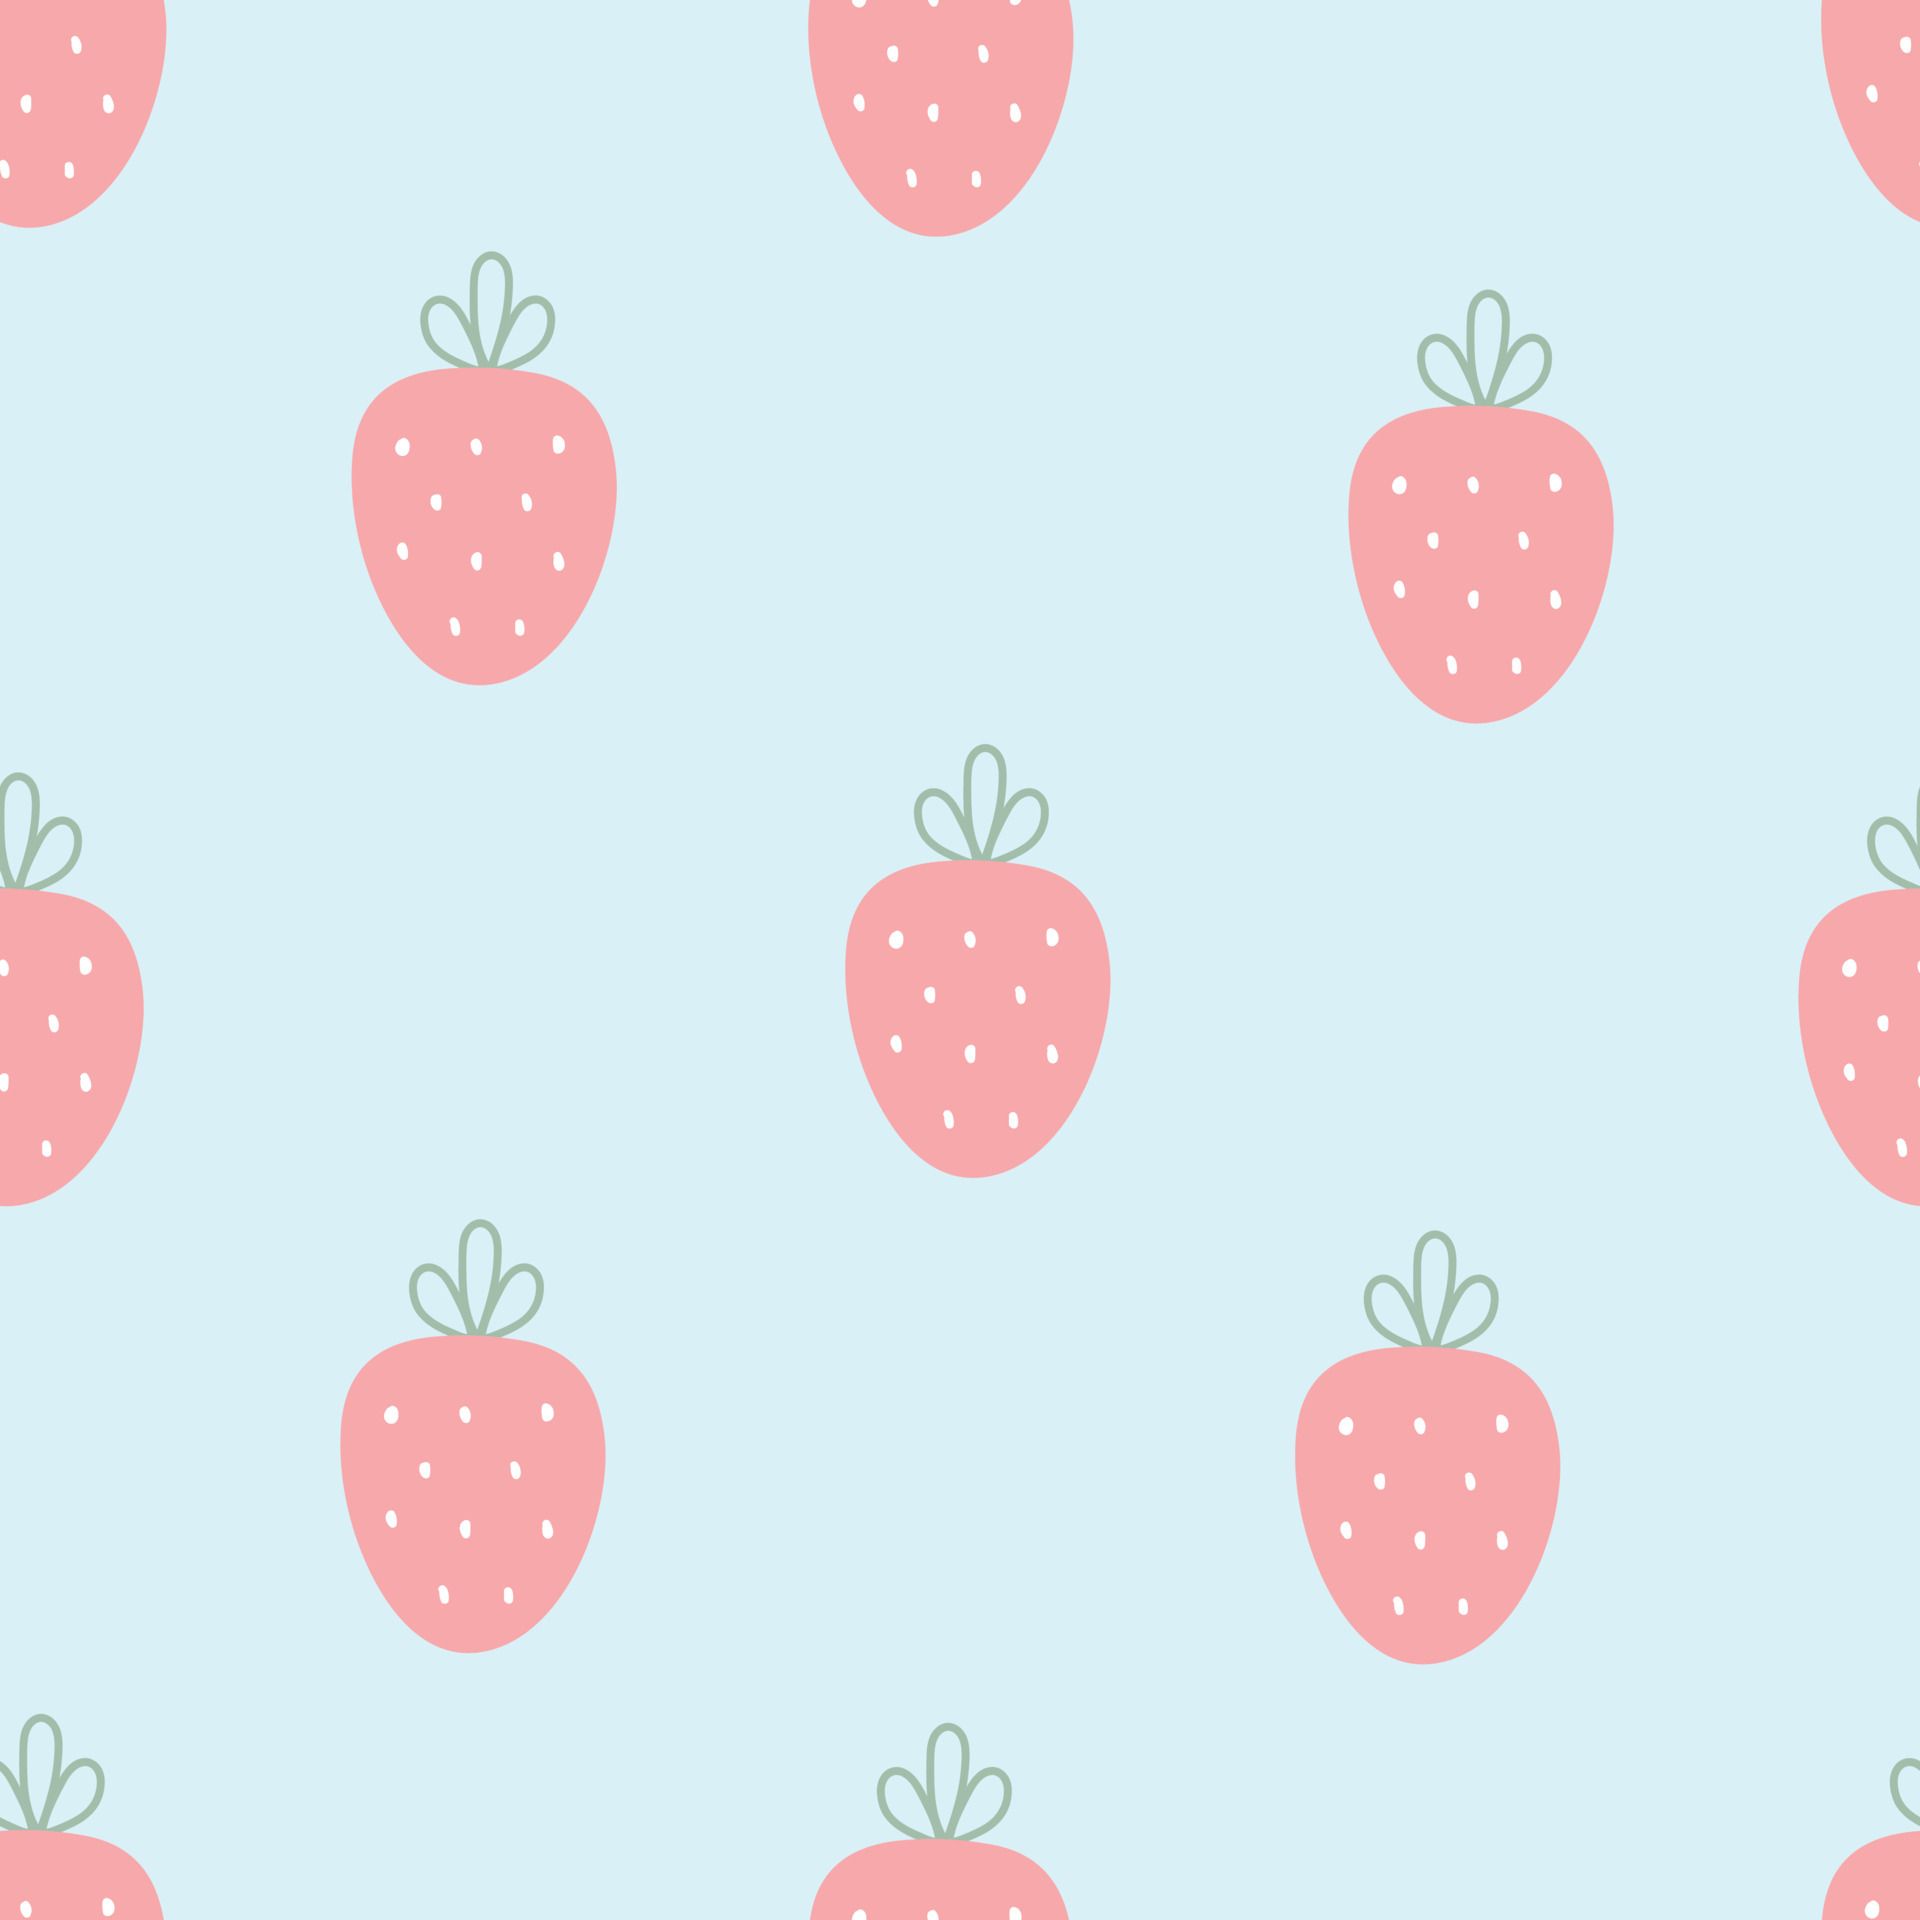  Erdbeeren Hintergrundbild 1920x1920. Baby Nahtlose Muster Rosa Erdbeeren Auf Blauem Hintergrund Süßes Design, Cartoon Stil. Für Kinderbekleidung, Tapetendekoration 4930883 Vektor Kunst Bei Vecteezy